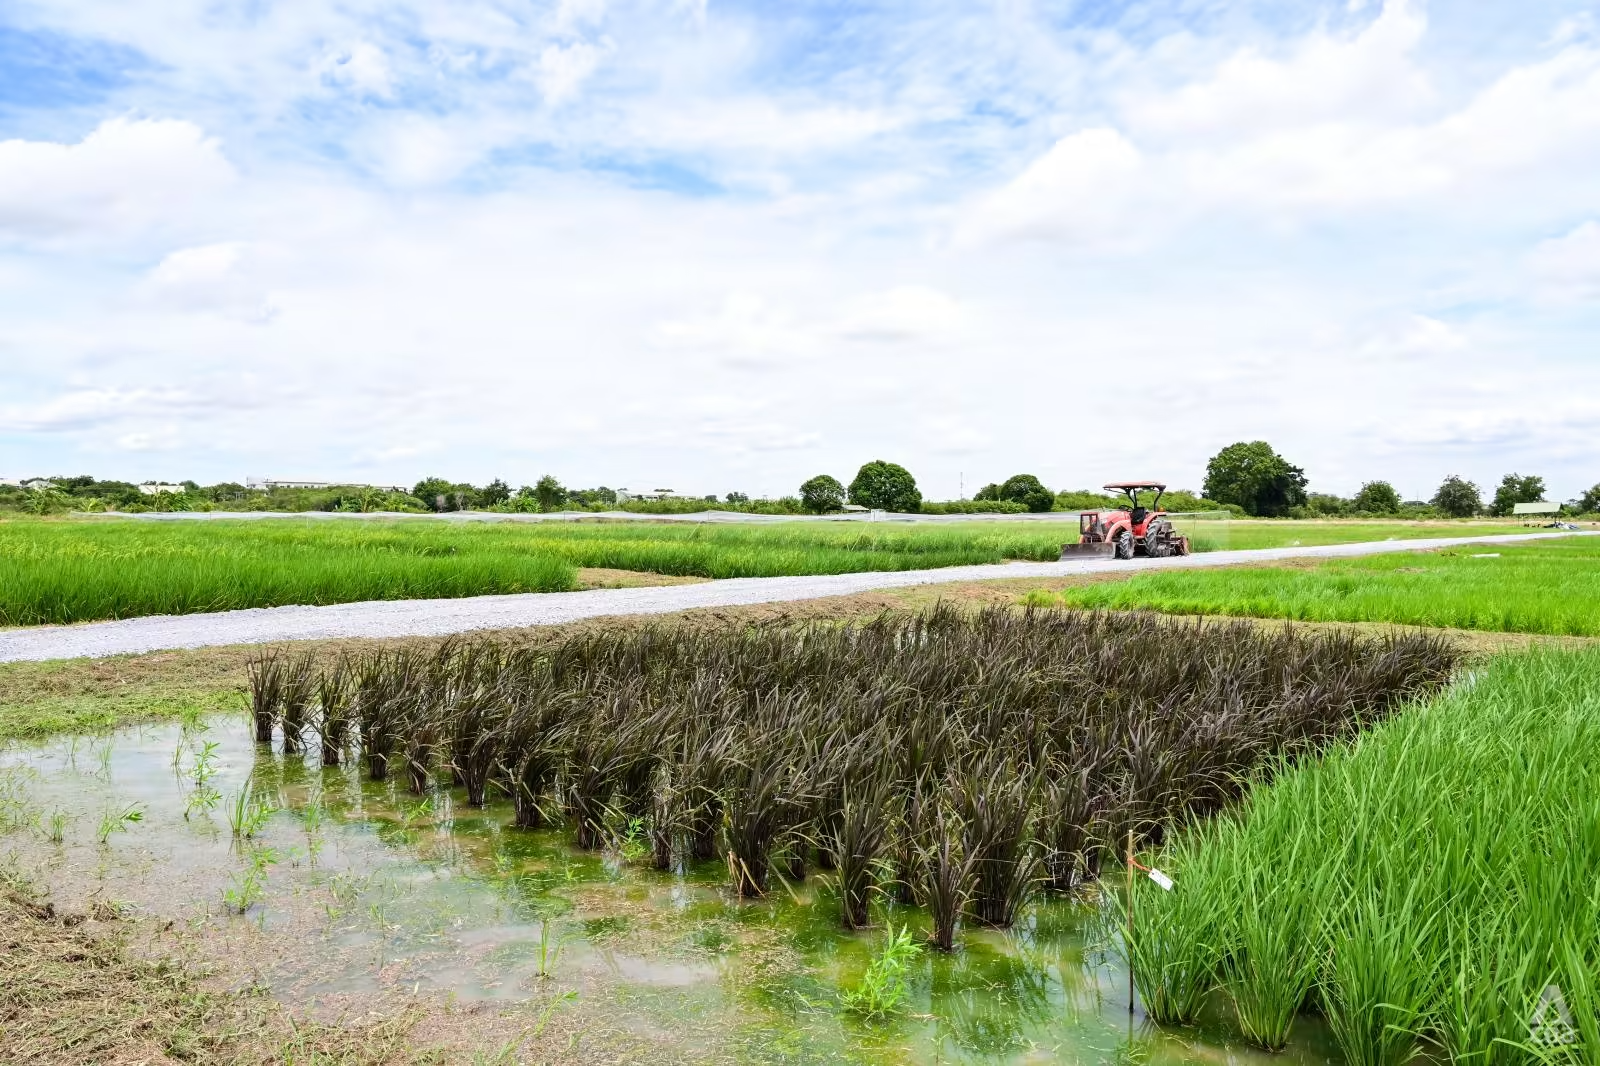 Thái Lan sản xuất nhiều gạo hơn mức tiêu thụ nhưng tương lai ngành lúa gạo nước này đang bị đe dọa bởi biến đổi khí hậu. Ảnh: CNA